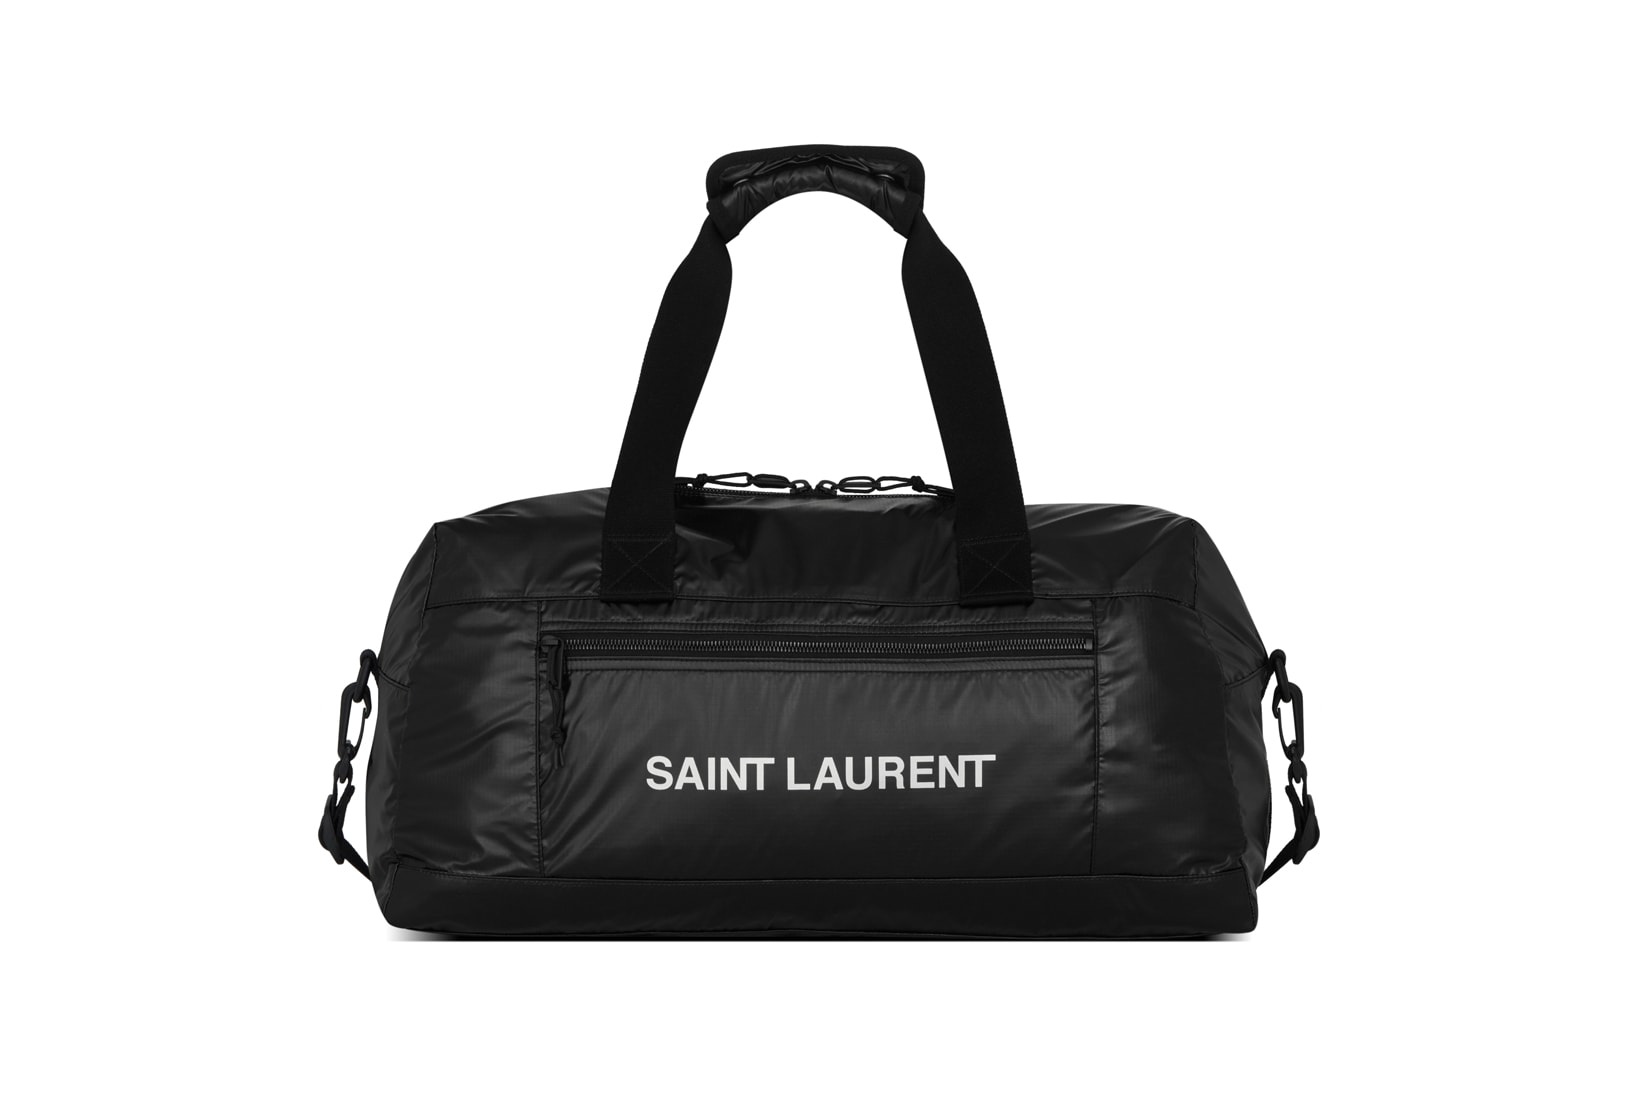 Saint Laurent Nuxx Duffle Bag Black